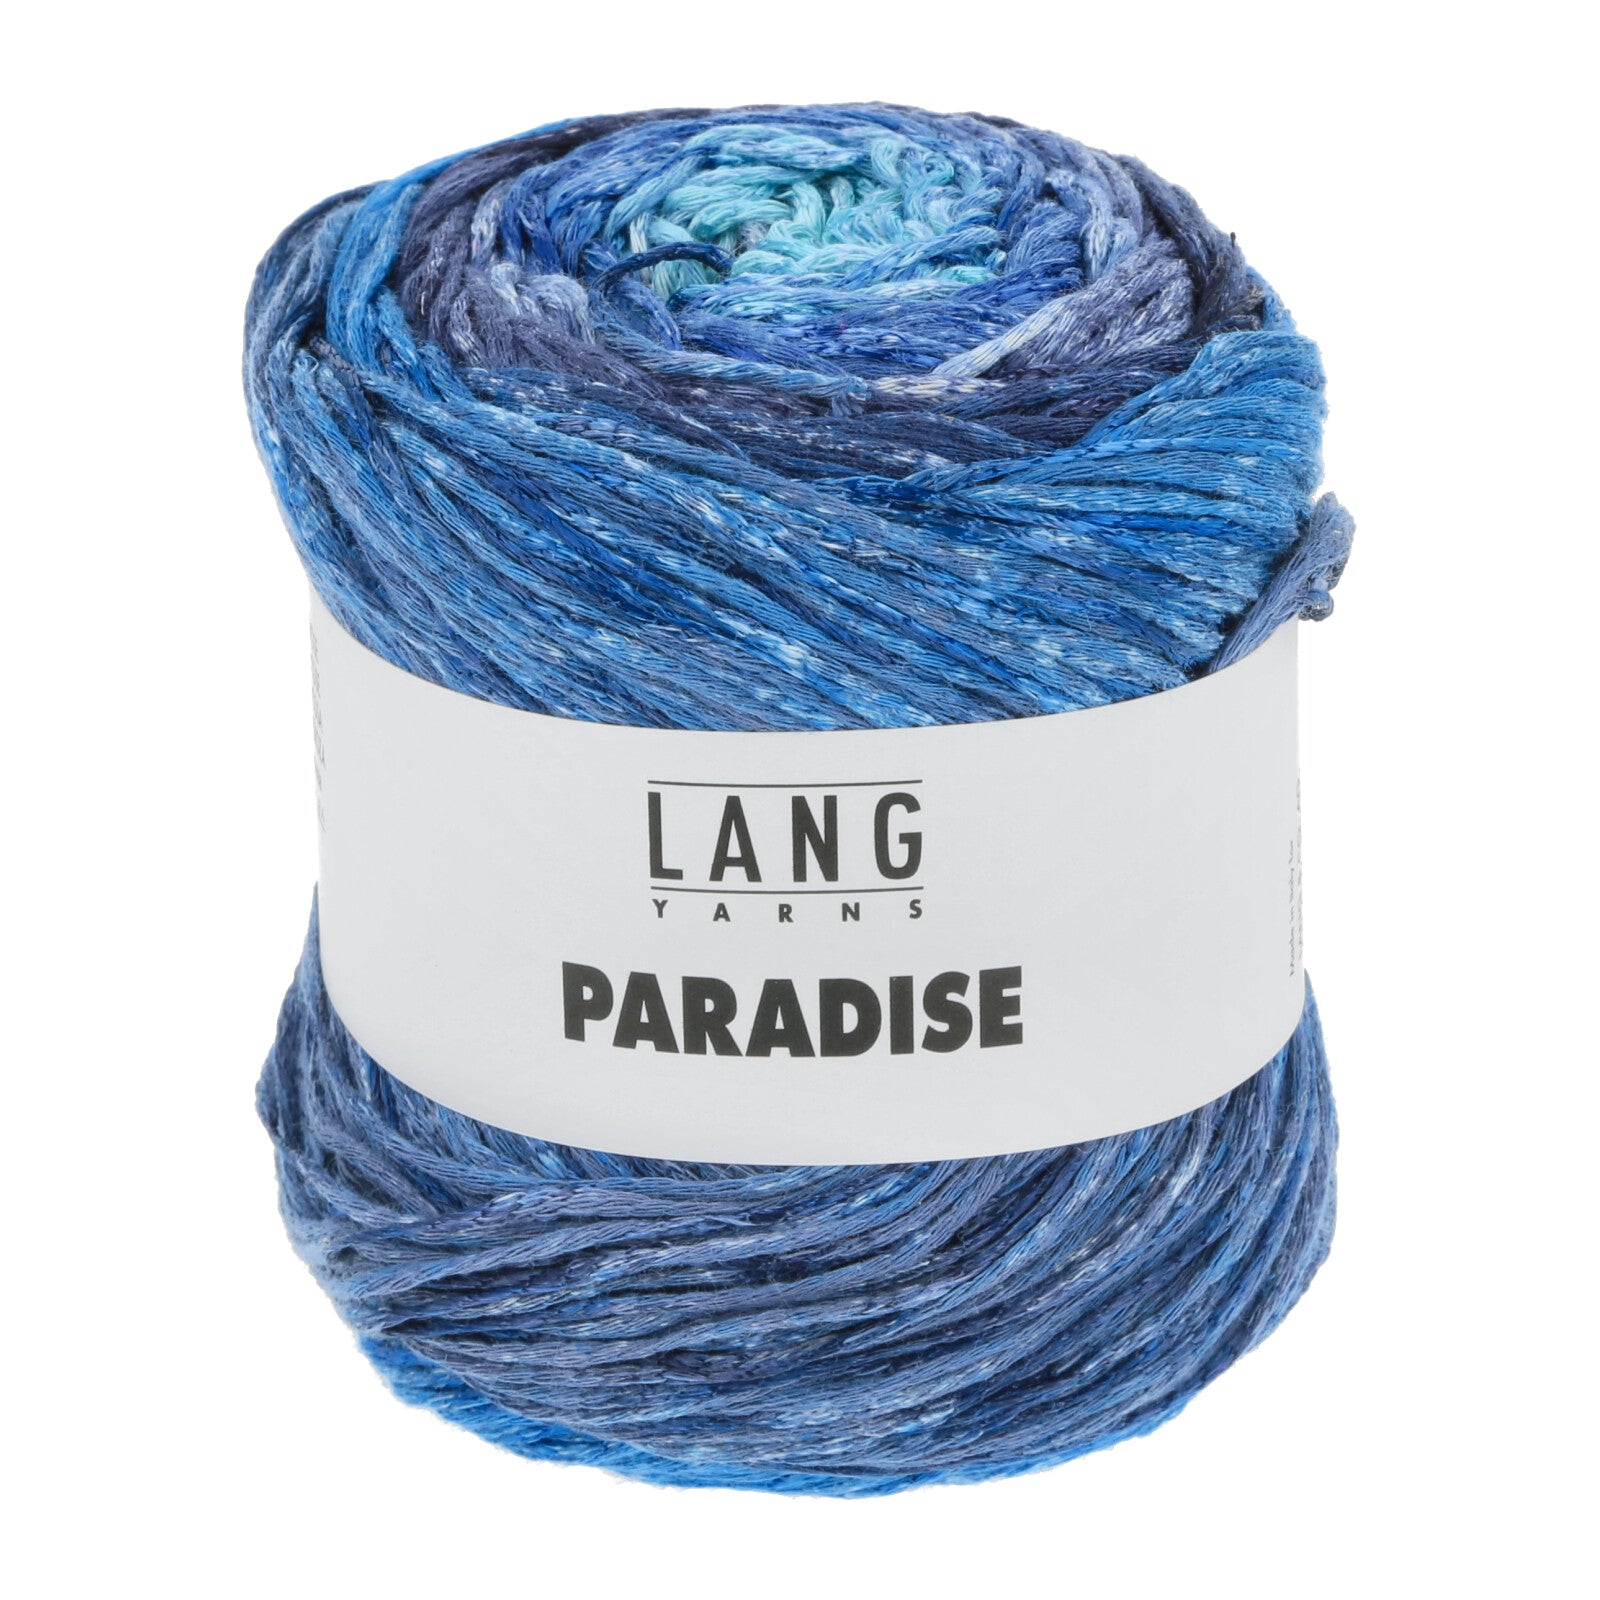 Lang Yarns Paradise yarn color 6